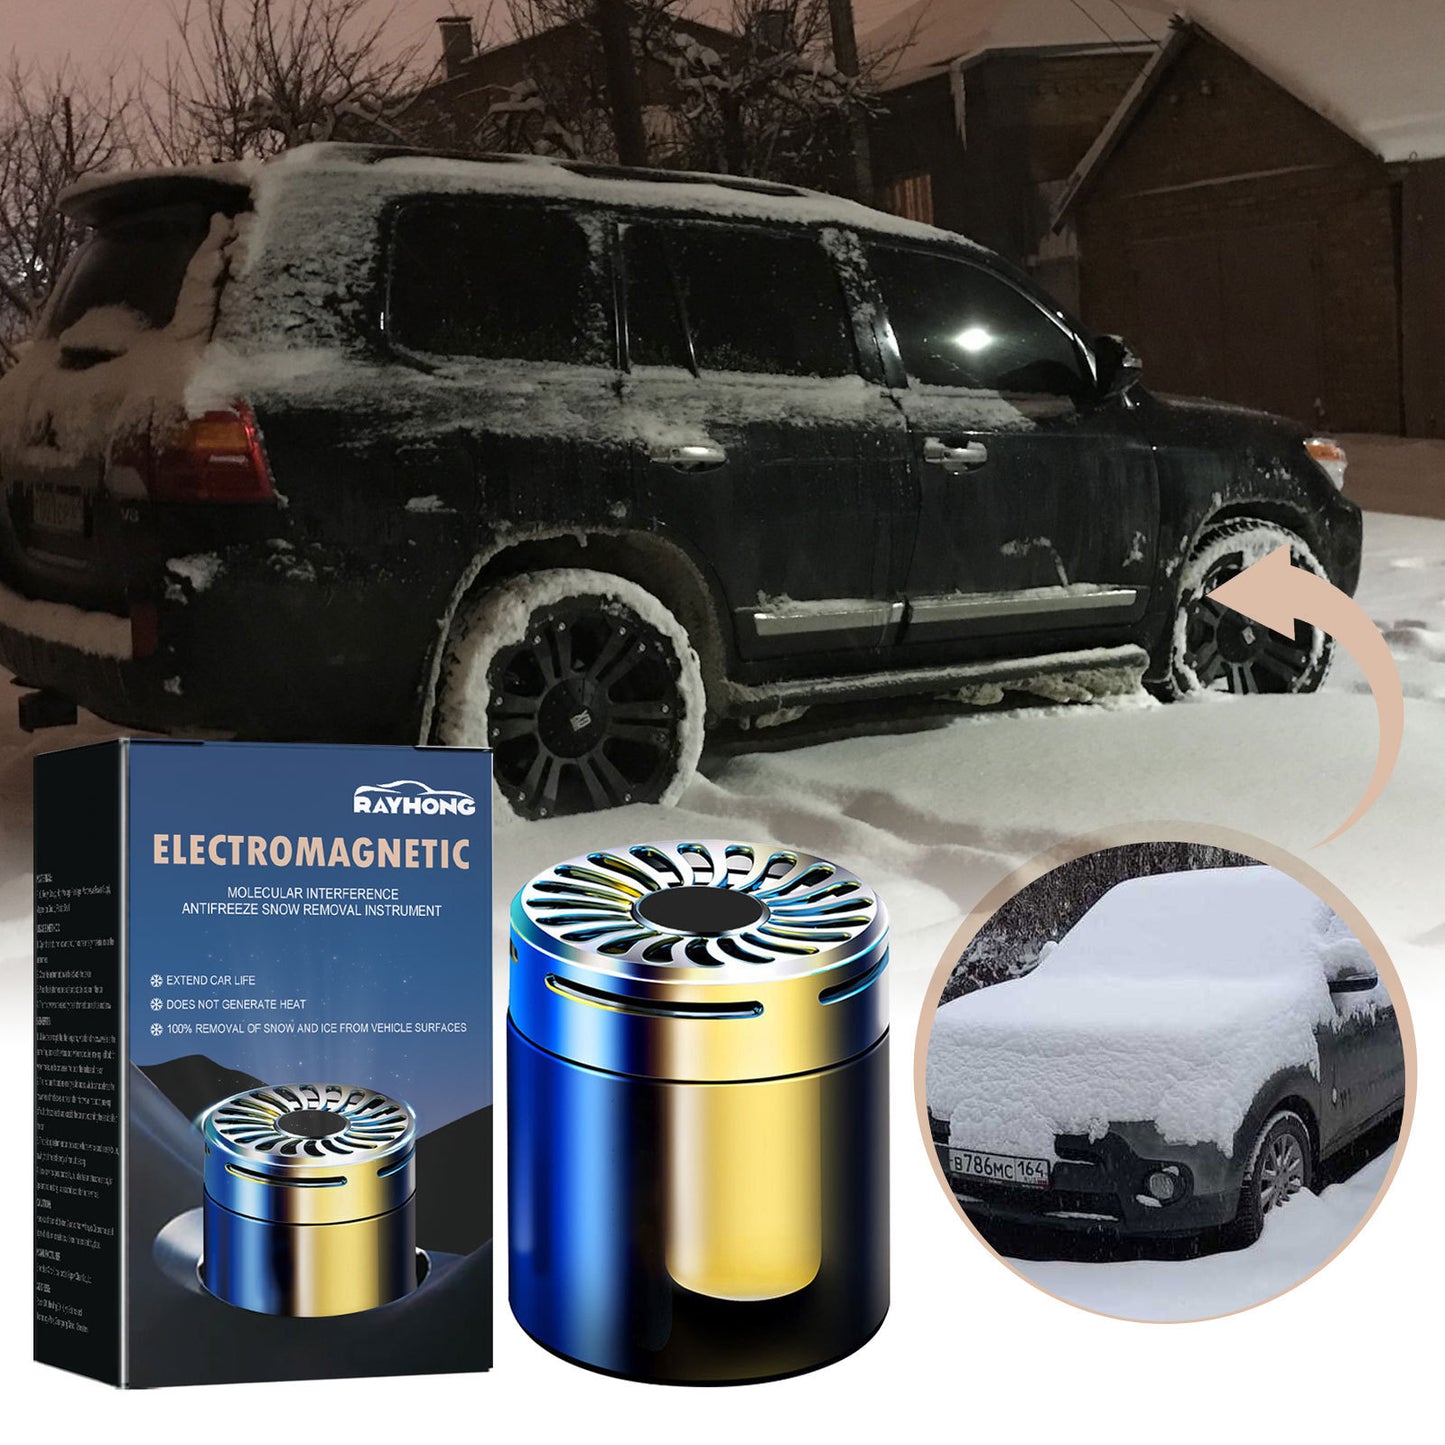 Instrumento de deshielo Molecular para microondas de coche, accesorios de Interior de coche, aromaterapia para vehículo, herramientas anticongelantes para eliminación de nieve